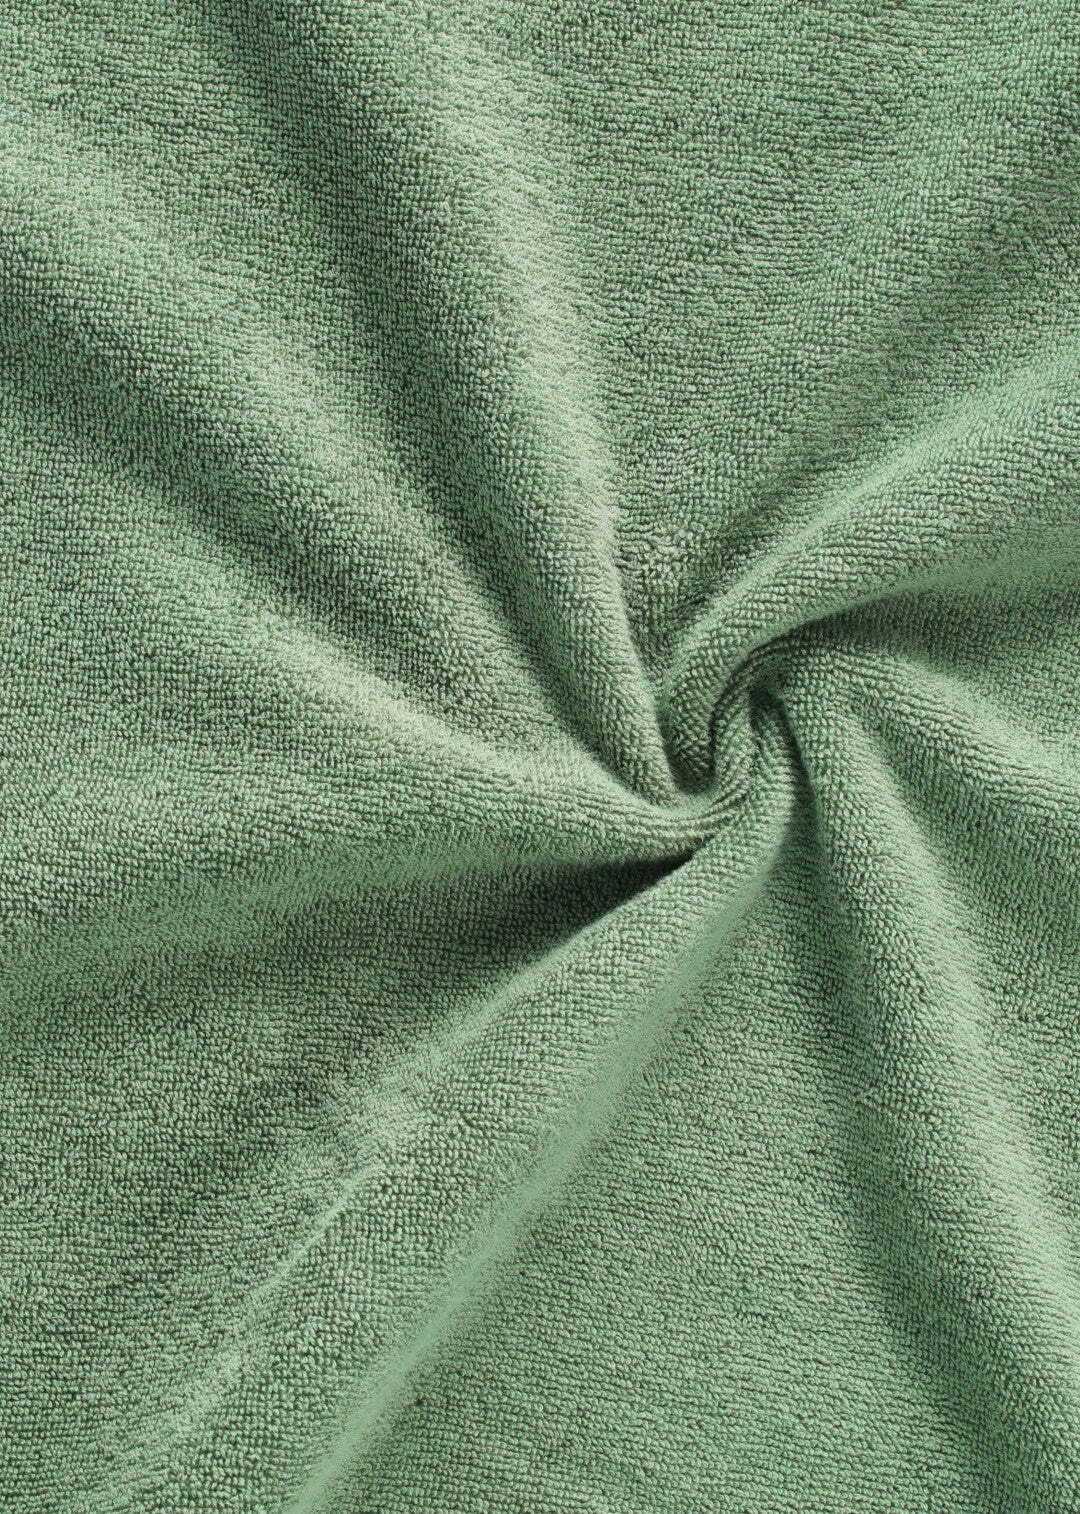 Handtuch Baumwolle Dunkelgrün 30 x 30 cm 1